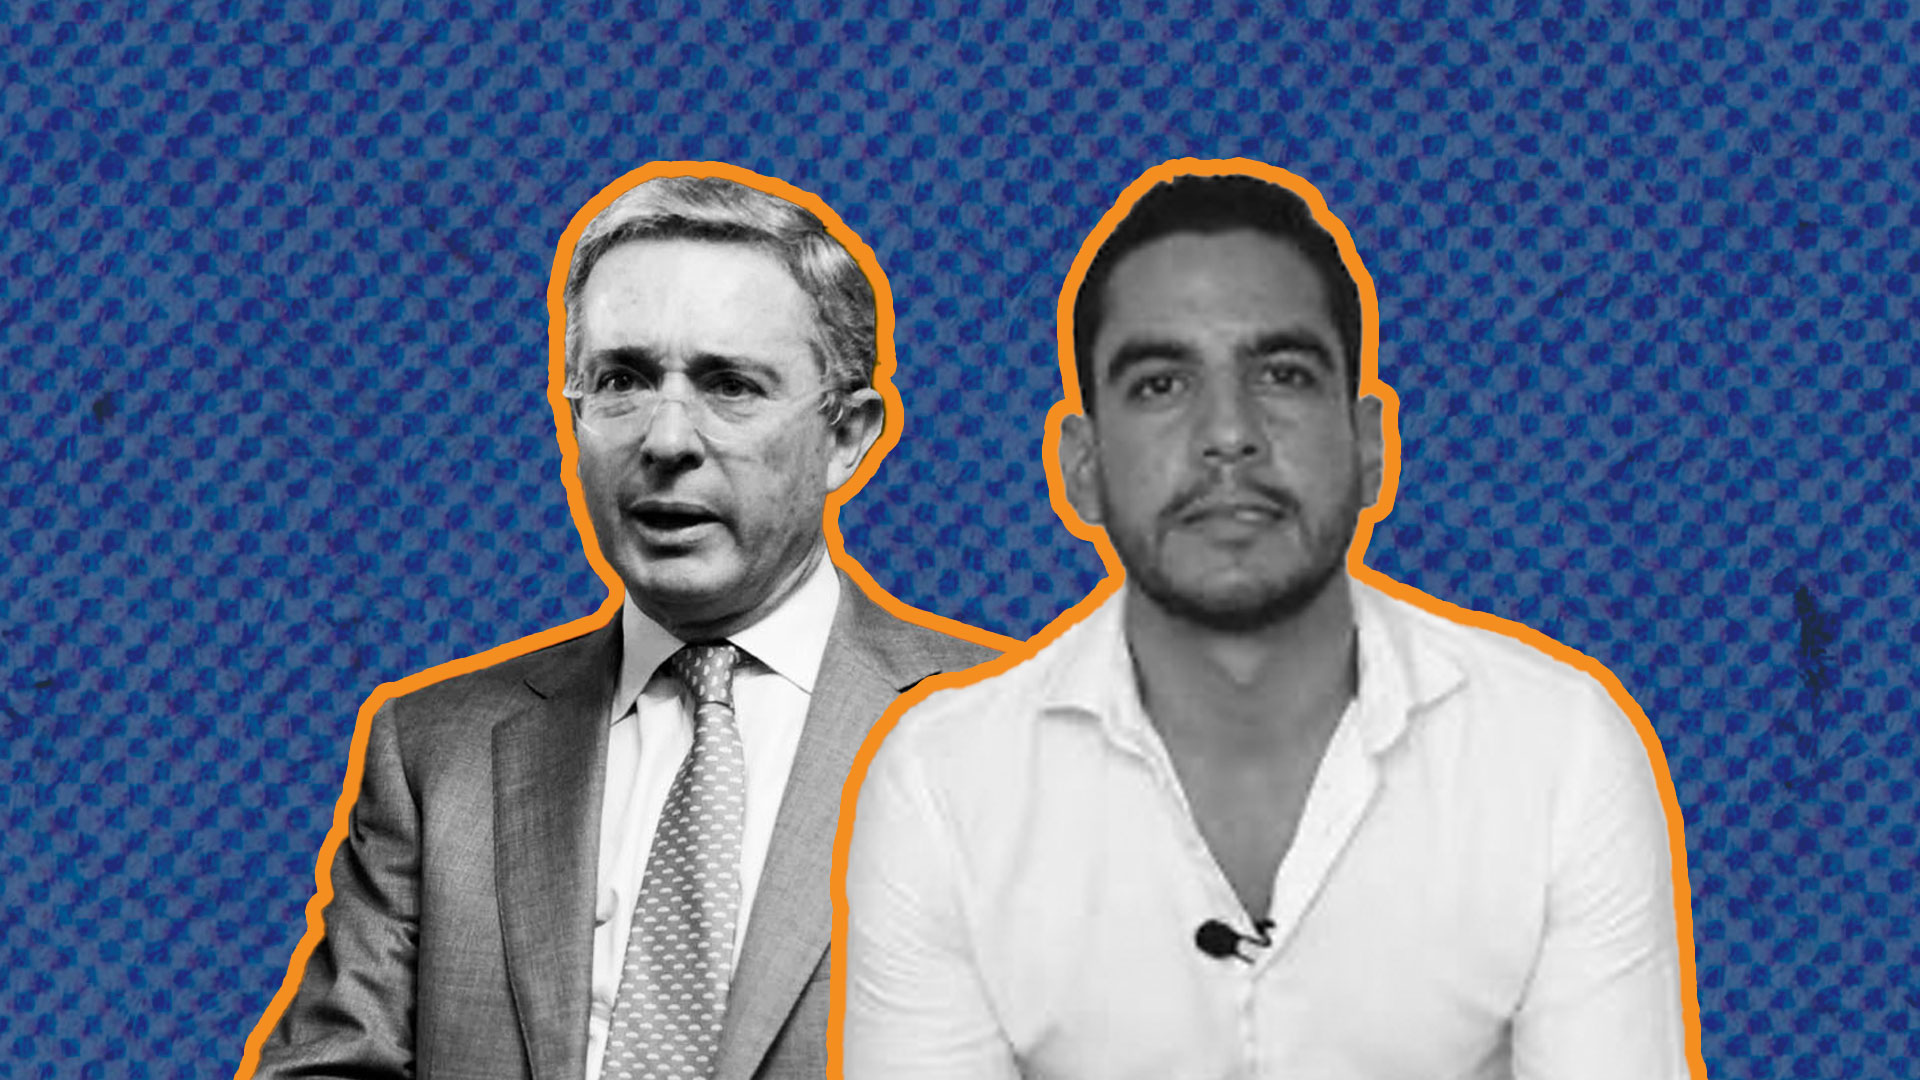 “No me consta que el señor expresidente Álvaro Uribe sea un corrupto, criminal, bandido ni narcoparamilitar”: el congresista Álex Flórez tuvo que retractarse